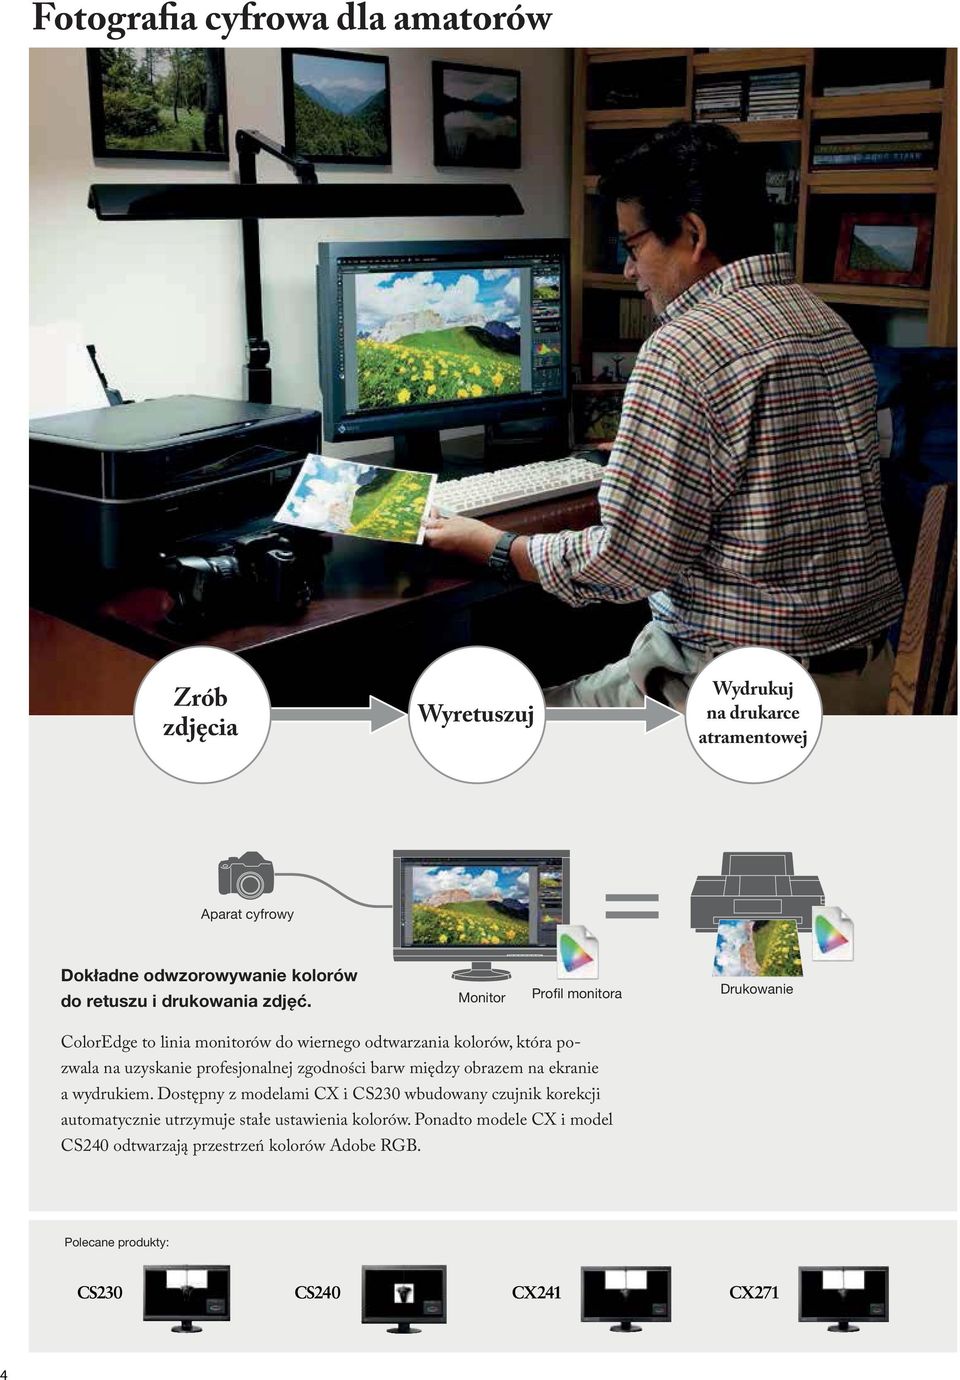 Monitor Profil monitora Drukowanie ColorEdge to linia monitorów do wiernego odtwarzania kolorów, która pozwala na uzyskanie profesjonalnej